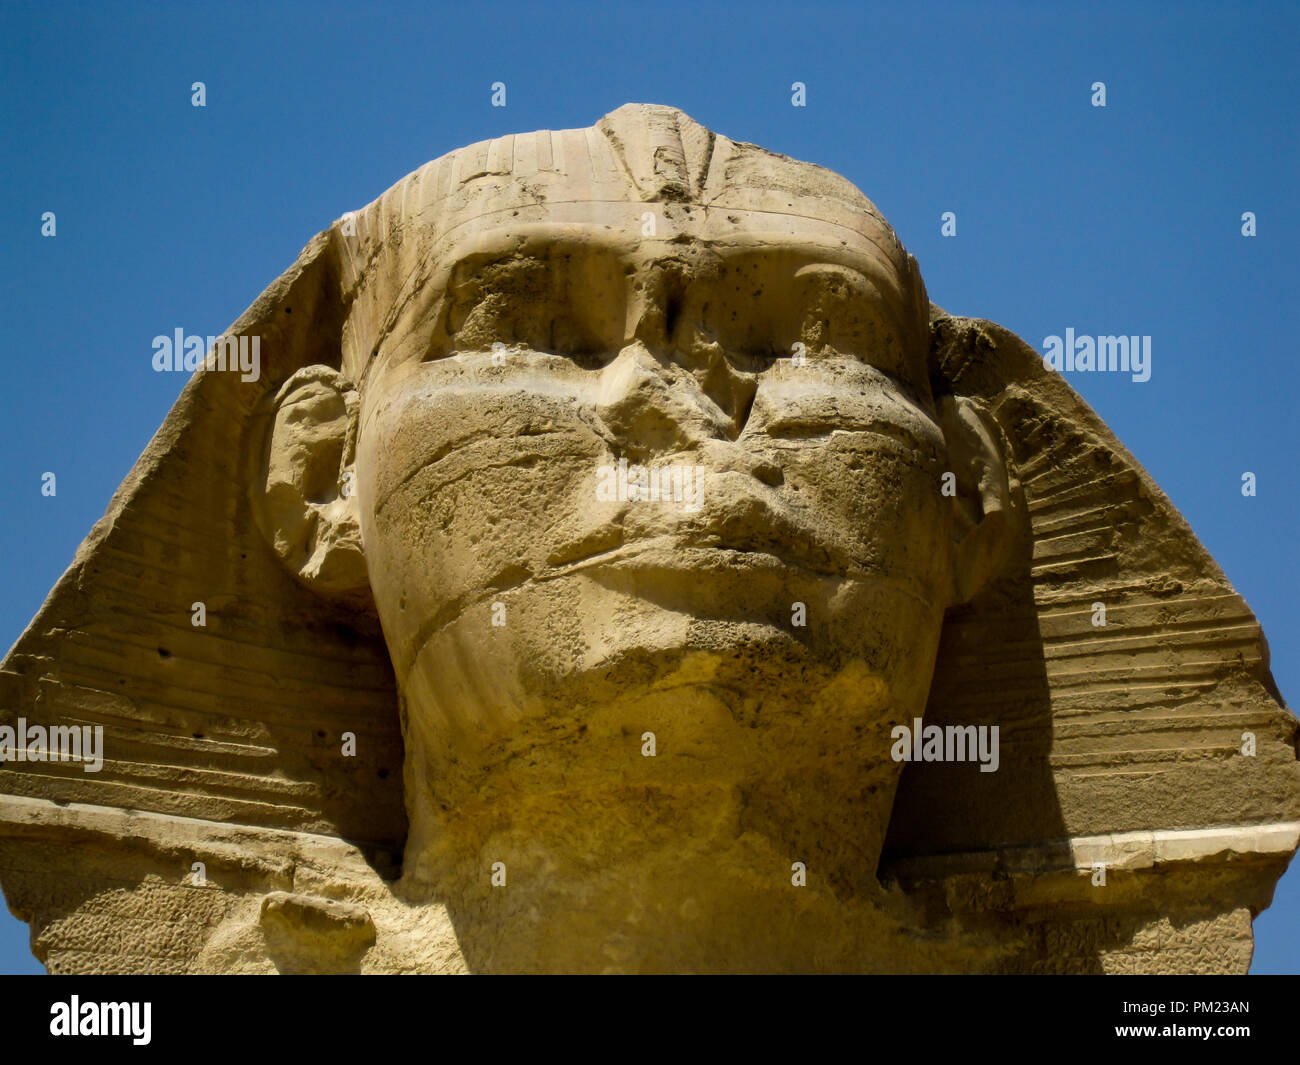 Close up sur le Grand Sphinx de Gizeh, en Egypte dans une zone à accès limité. C'est une destination touristique majeure et site archéologique important. Banque D'Images